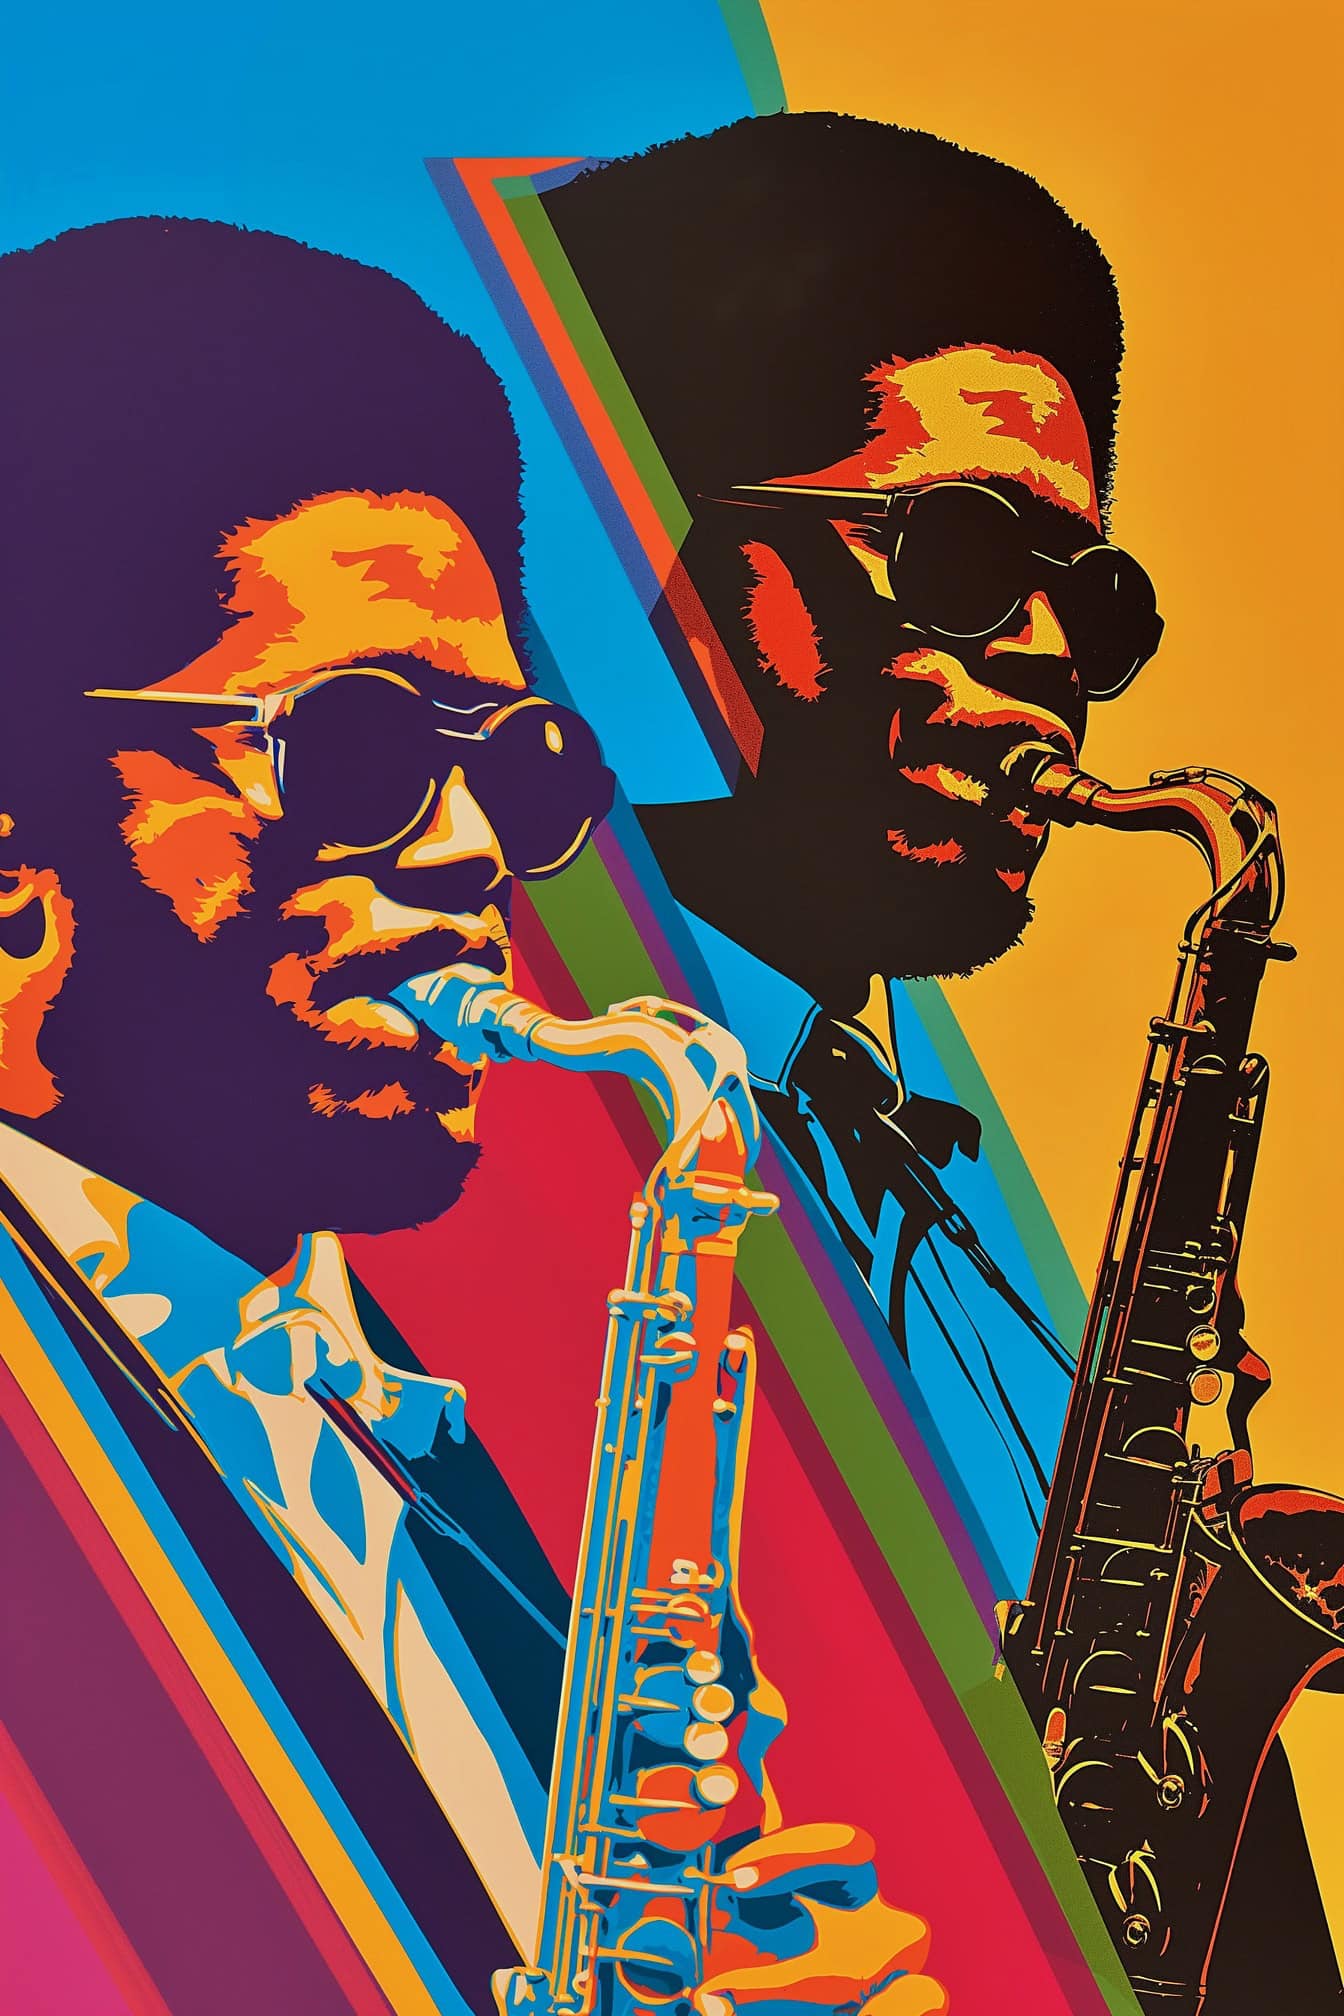 Affiche dans le style rétro des années 70 d’un musicien afro-américain jouant du saxophone